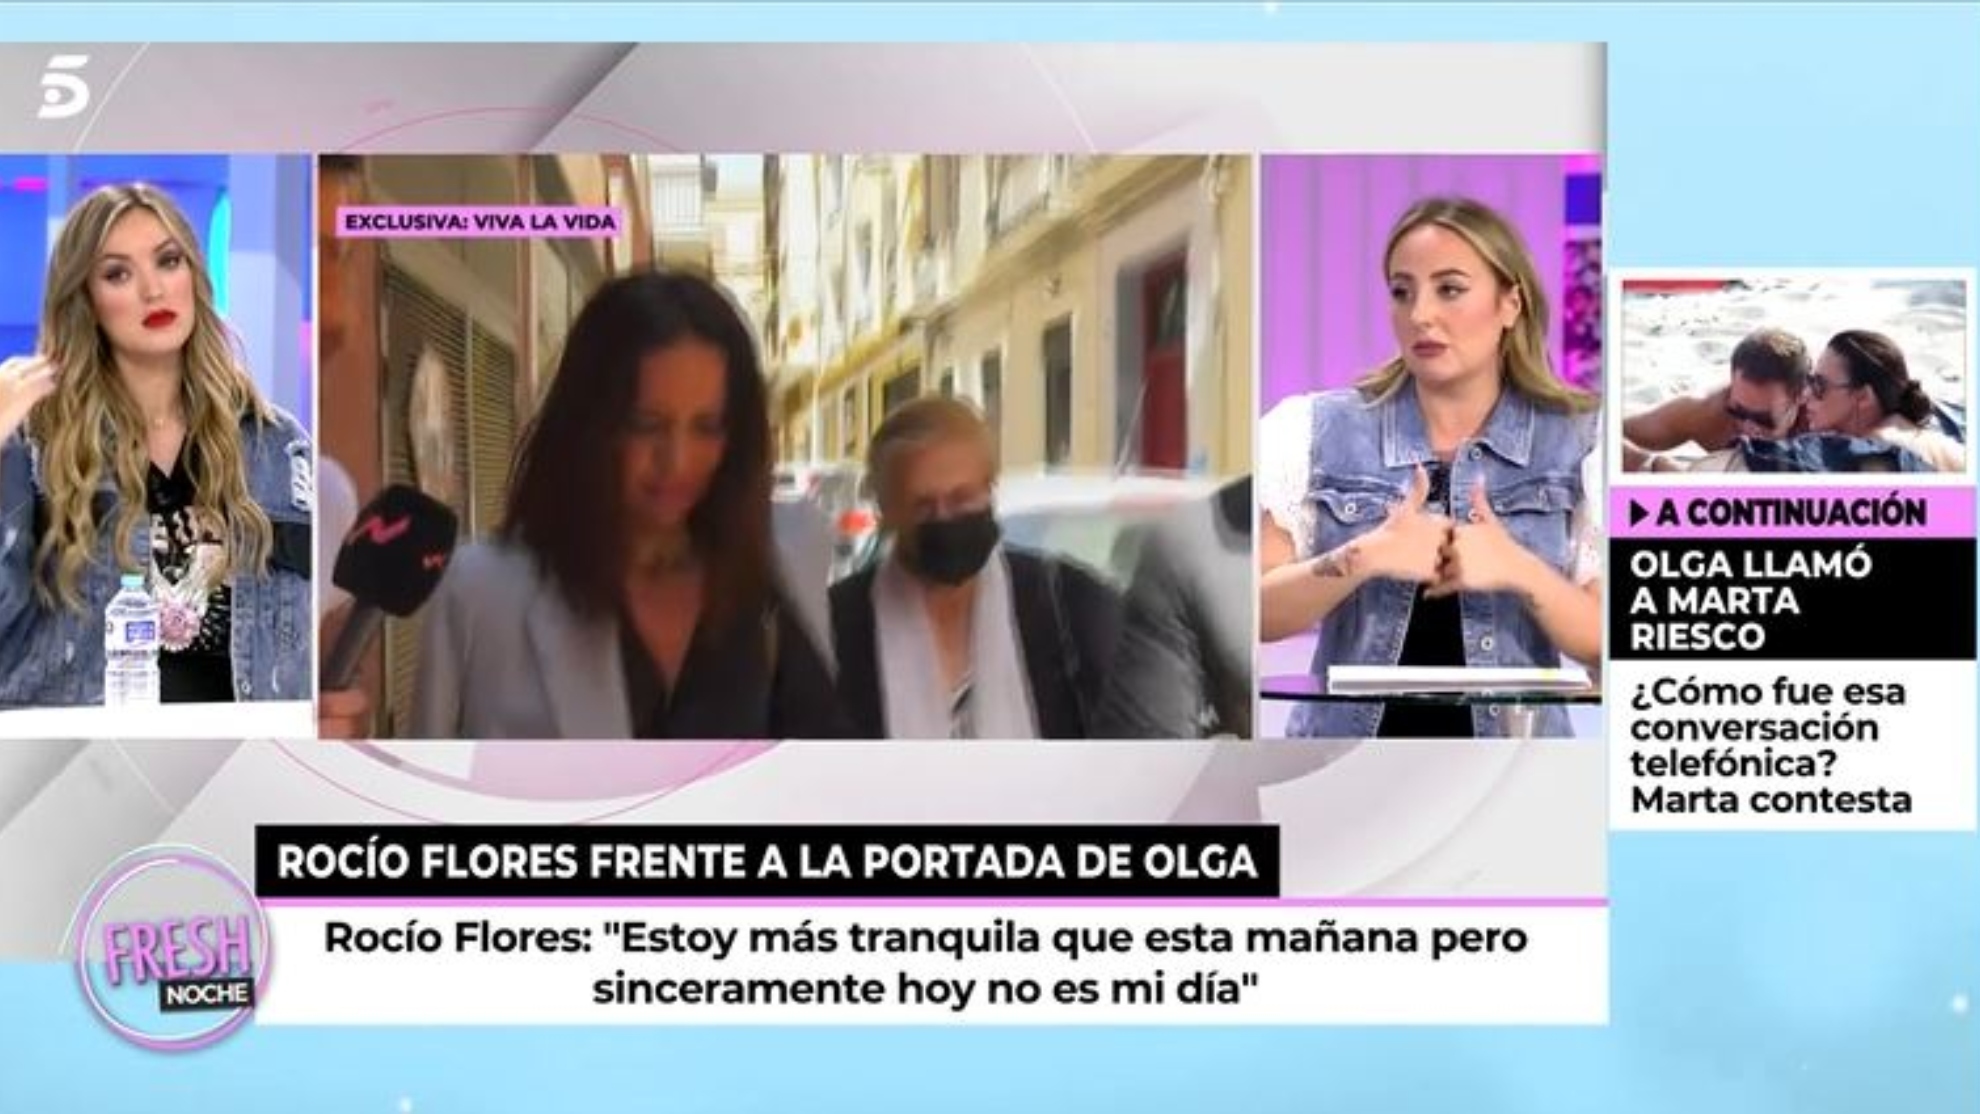 Roco Flores rectifica sus crticas hacia Olga Moreno: "Estaba en un estado de nervios"